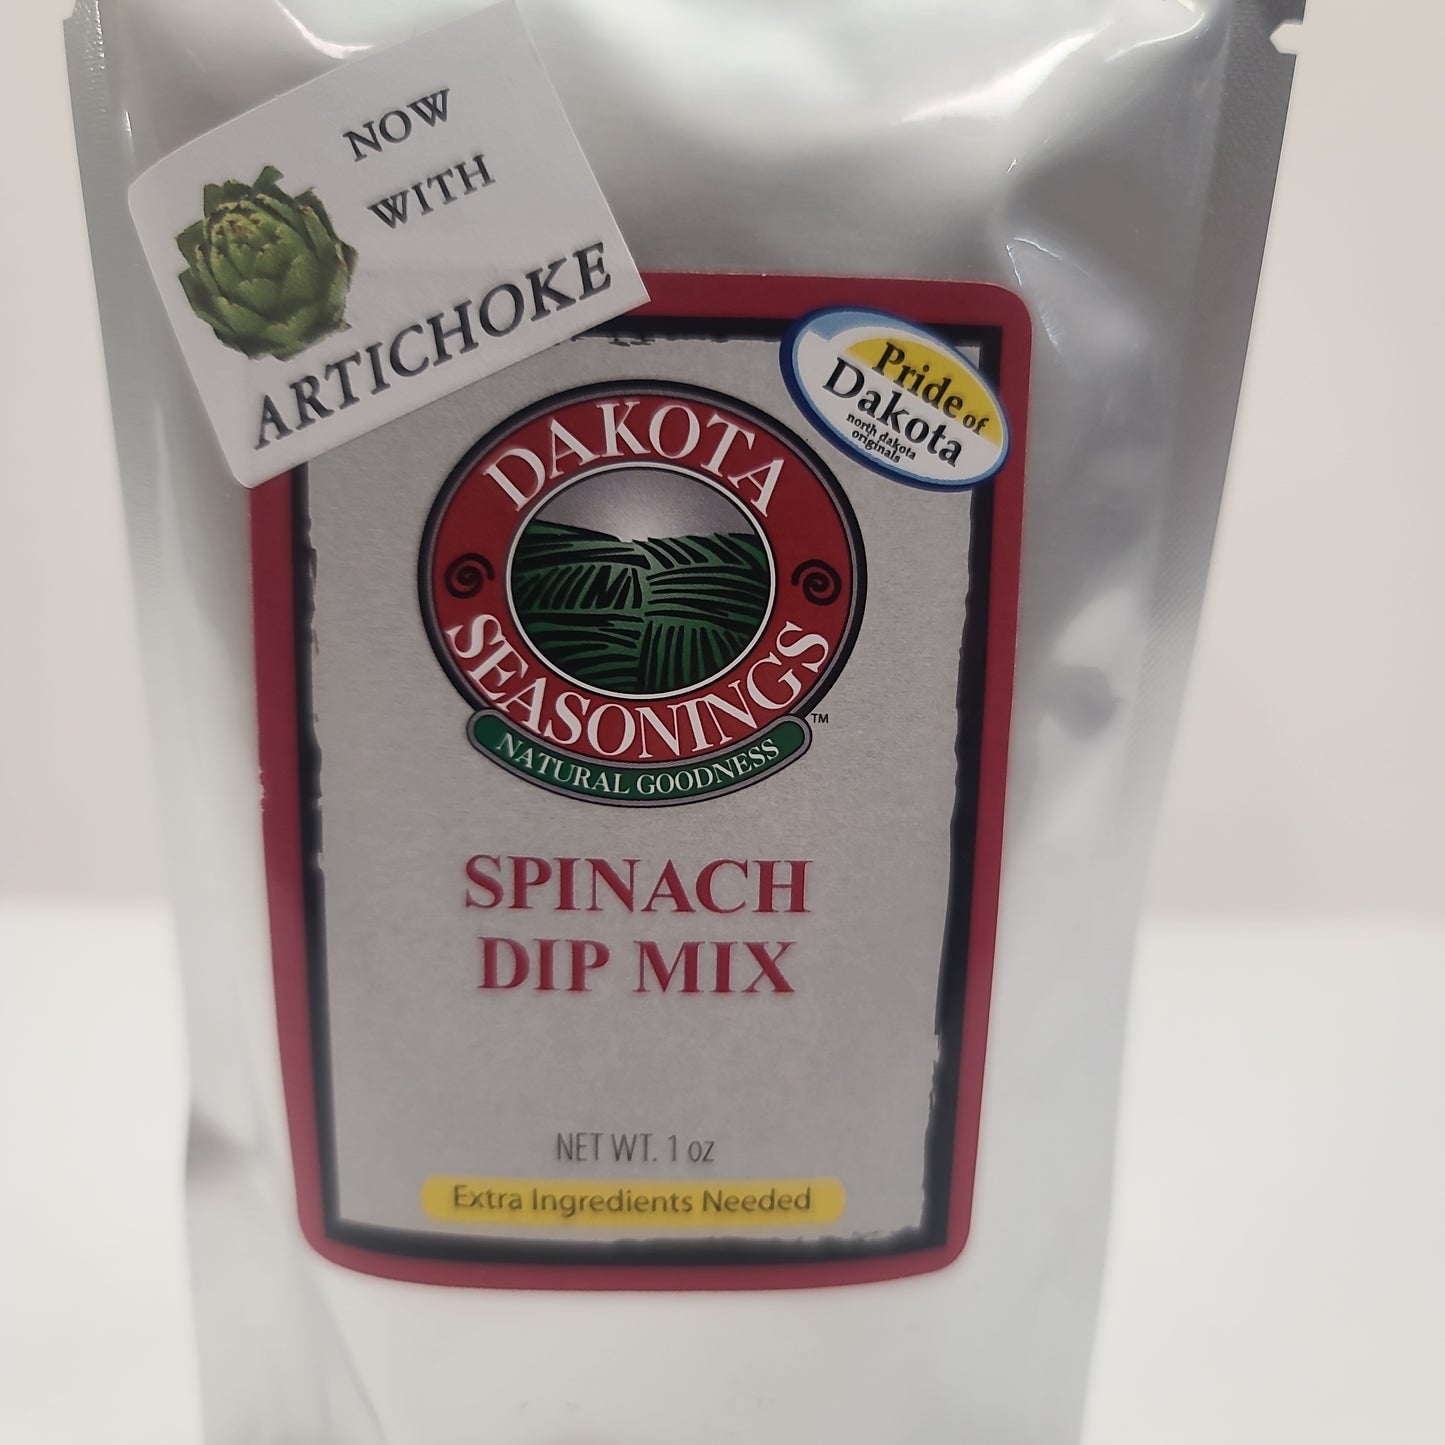 Spinach & Artichoke Dip mix